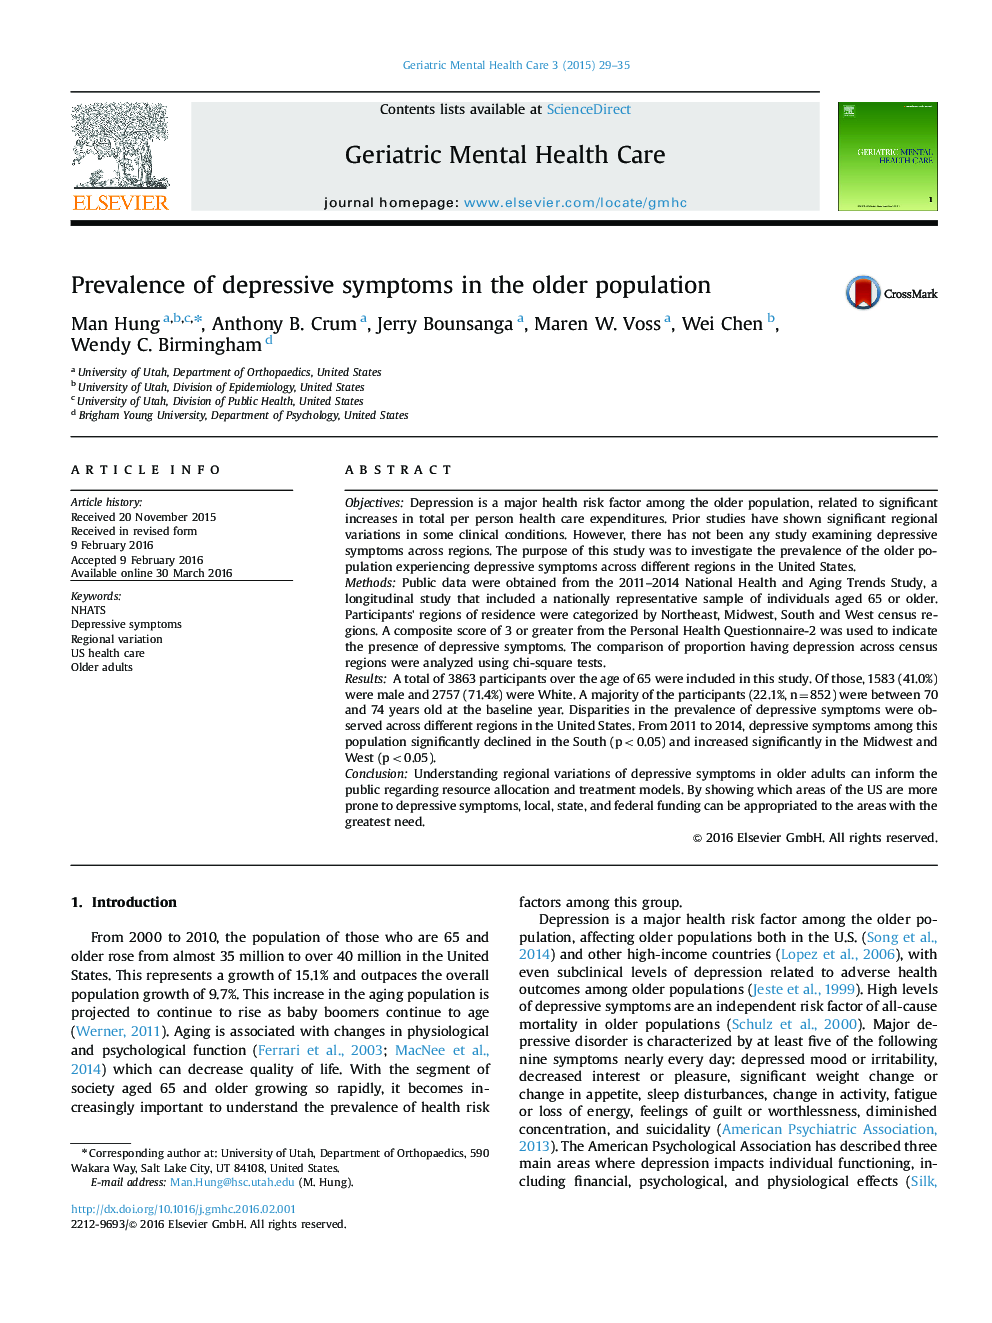 Prevalence of depressive symptoms in the older population